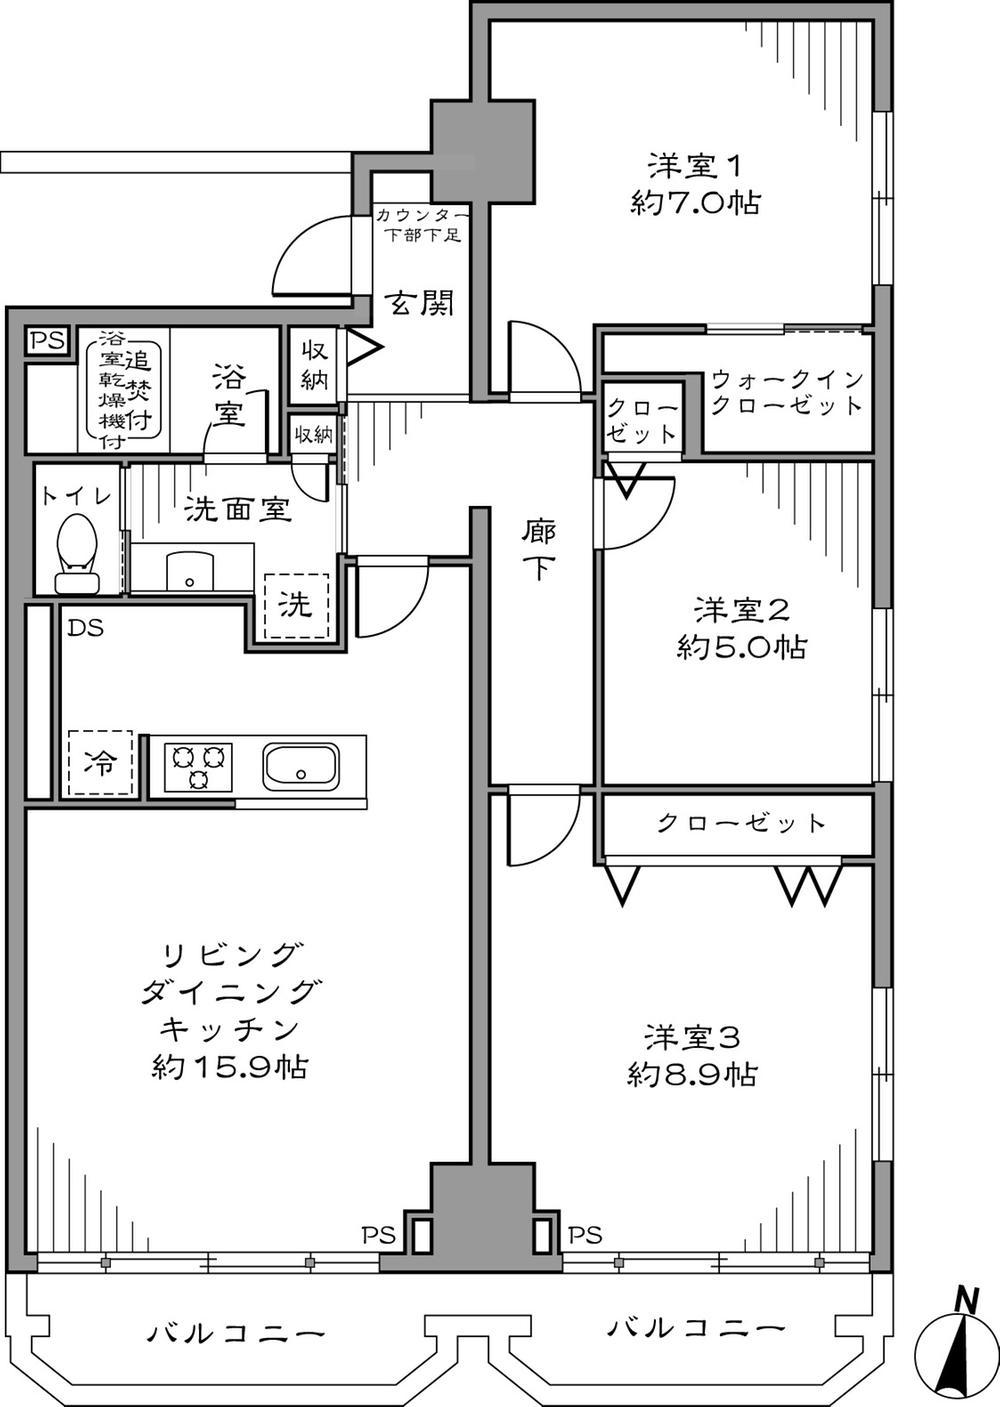 Floor plan. 3LDK81.33 sq m